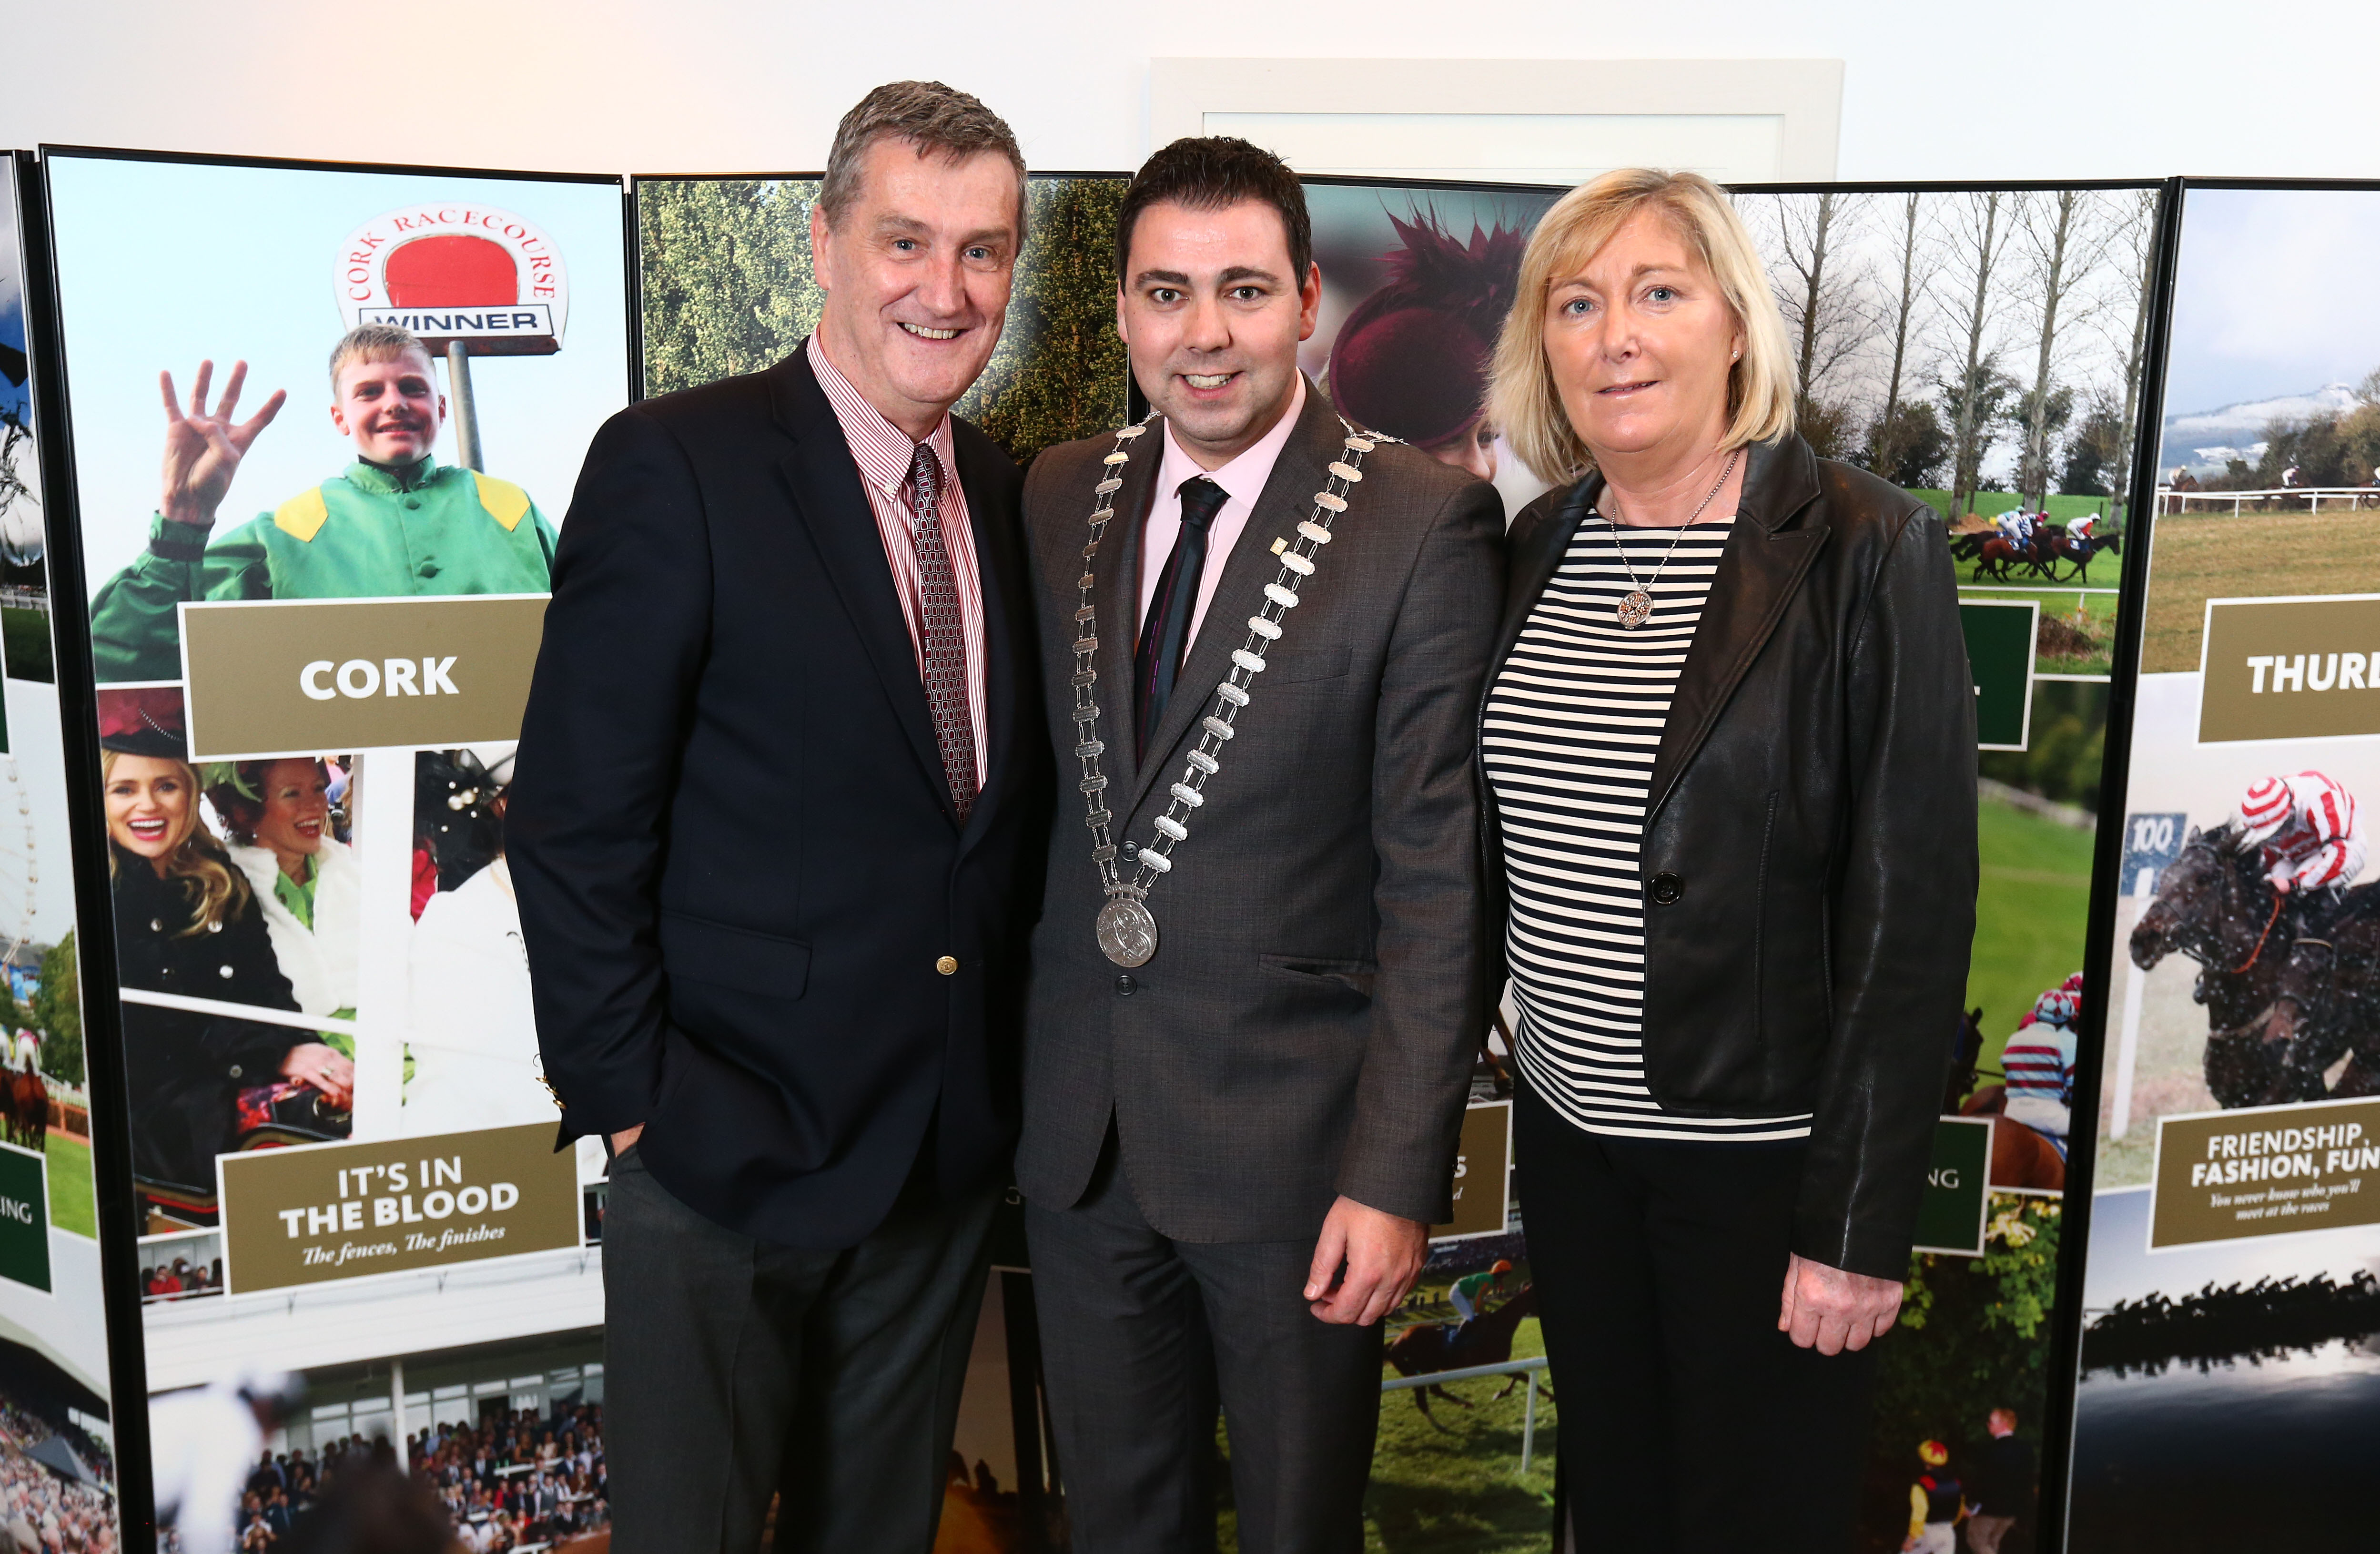 (left/right) Leo Powell, Mayor of Cork John Paul O’Shea, and Mary Kelly